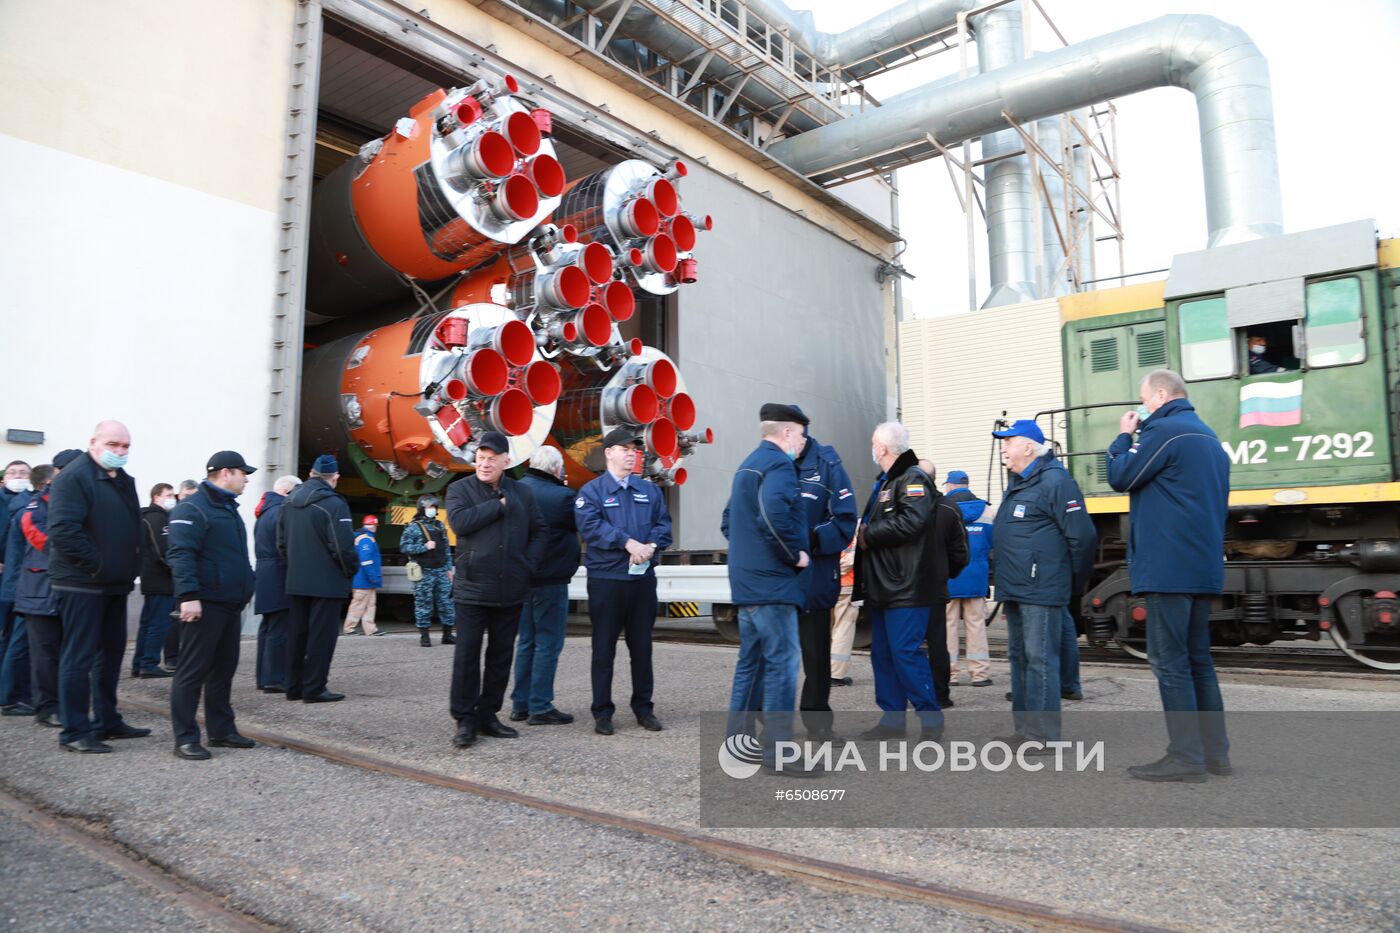 Вывоз РН "Союз-2. 1а" с пилотируемым кораблем " Союз МС -18" на стартовой комплекс космодрома Байконур 